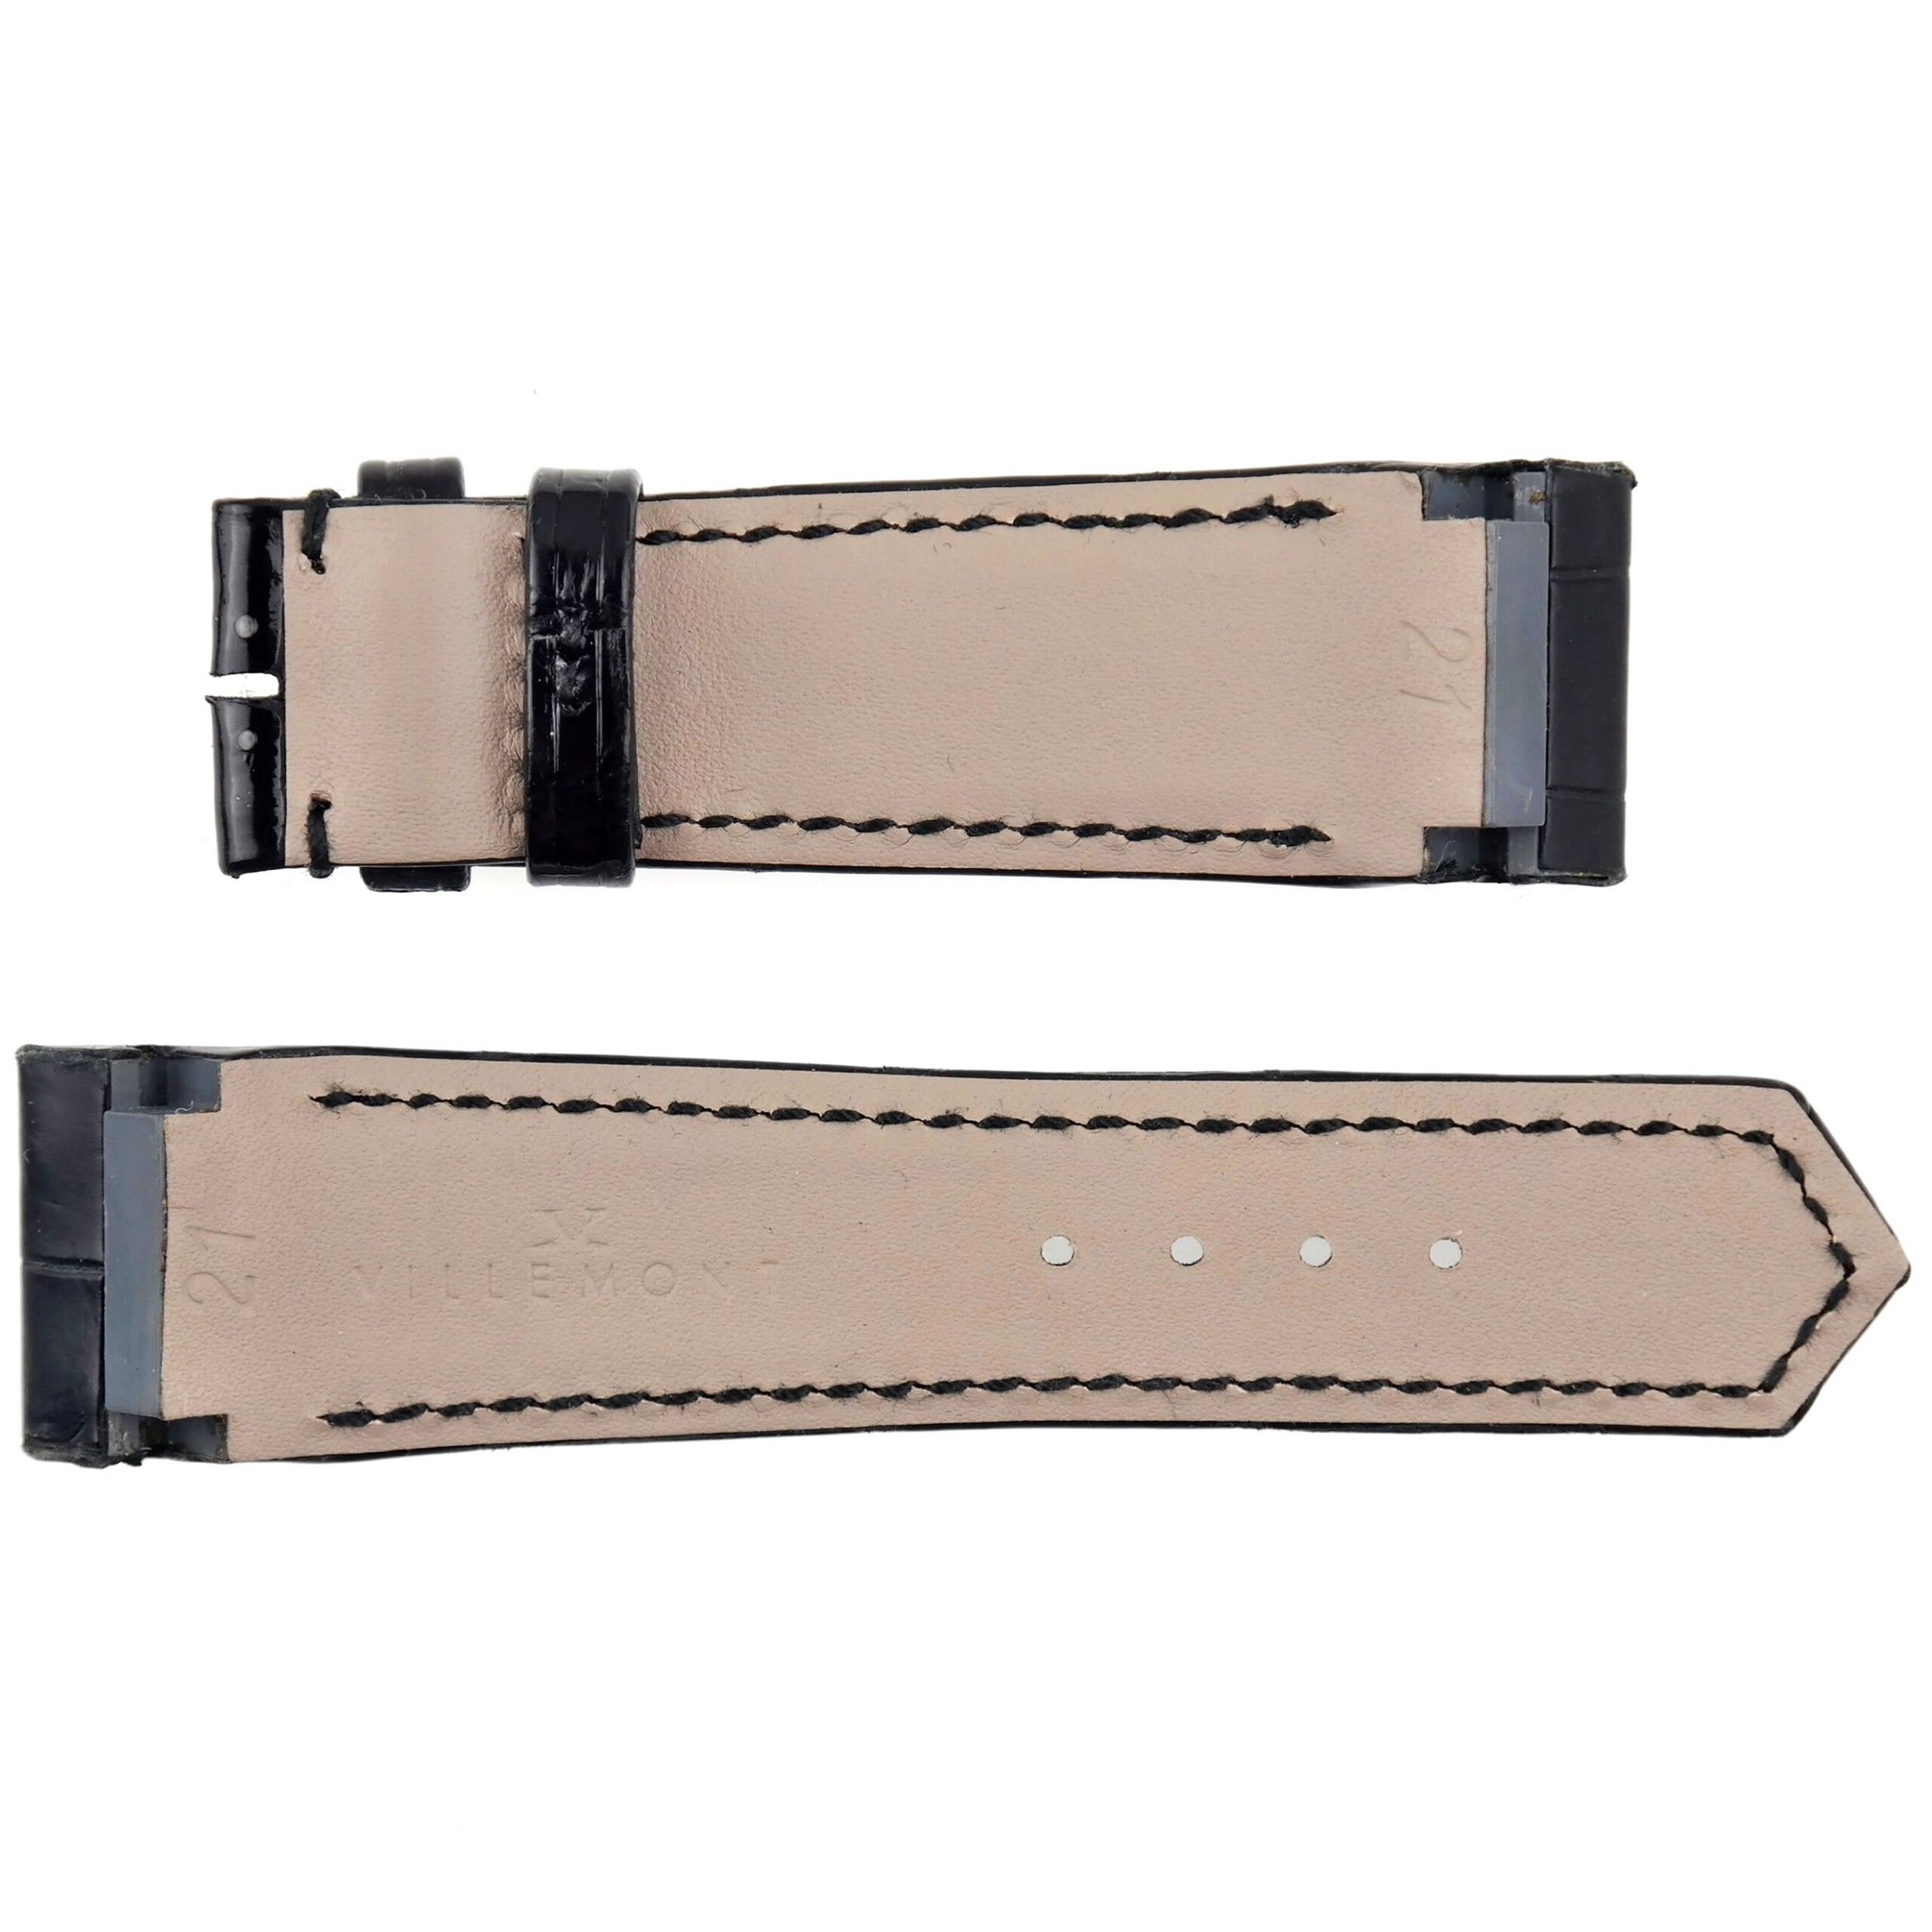 VILLEMONT - Luxury Watch Strap - 21 mm x 18 mm - Genuine Leather